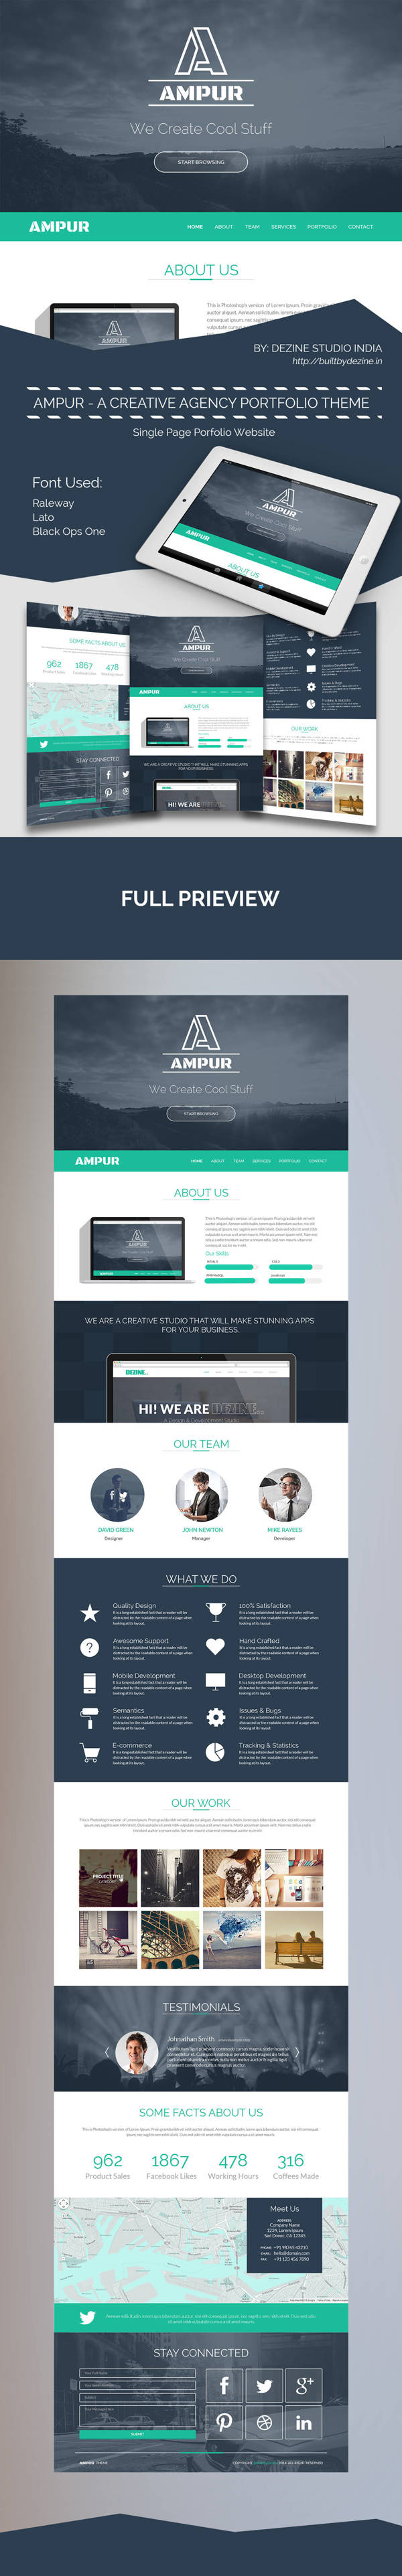 AMPUR Theme - A creative agency portfolio theme